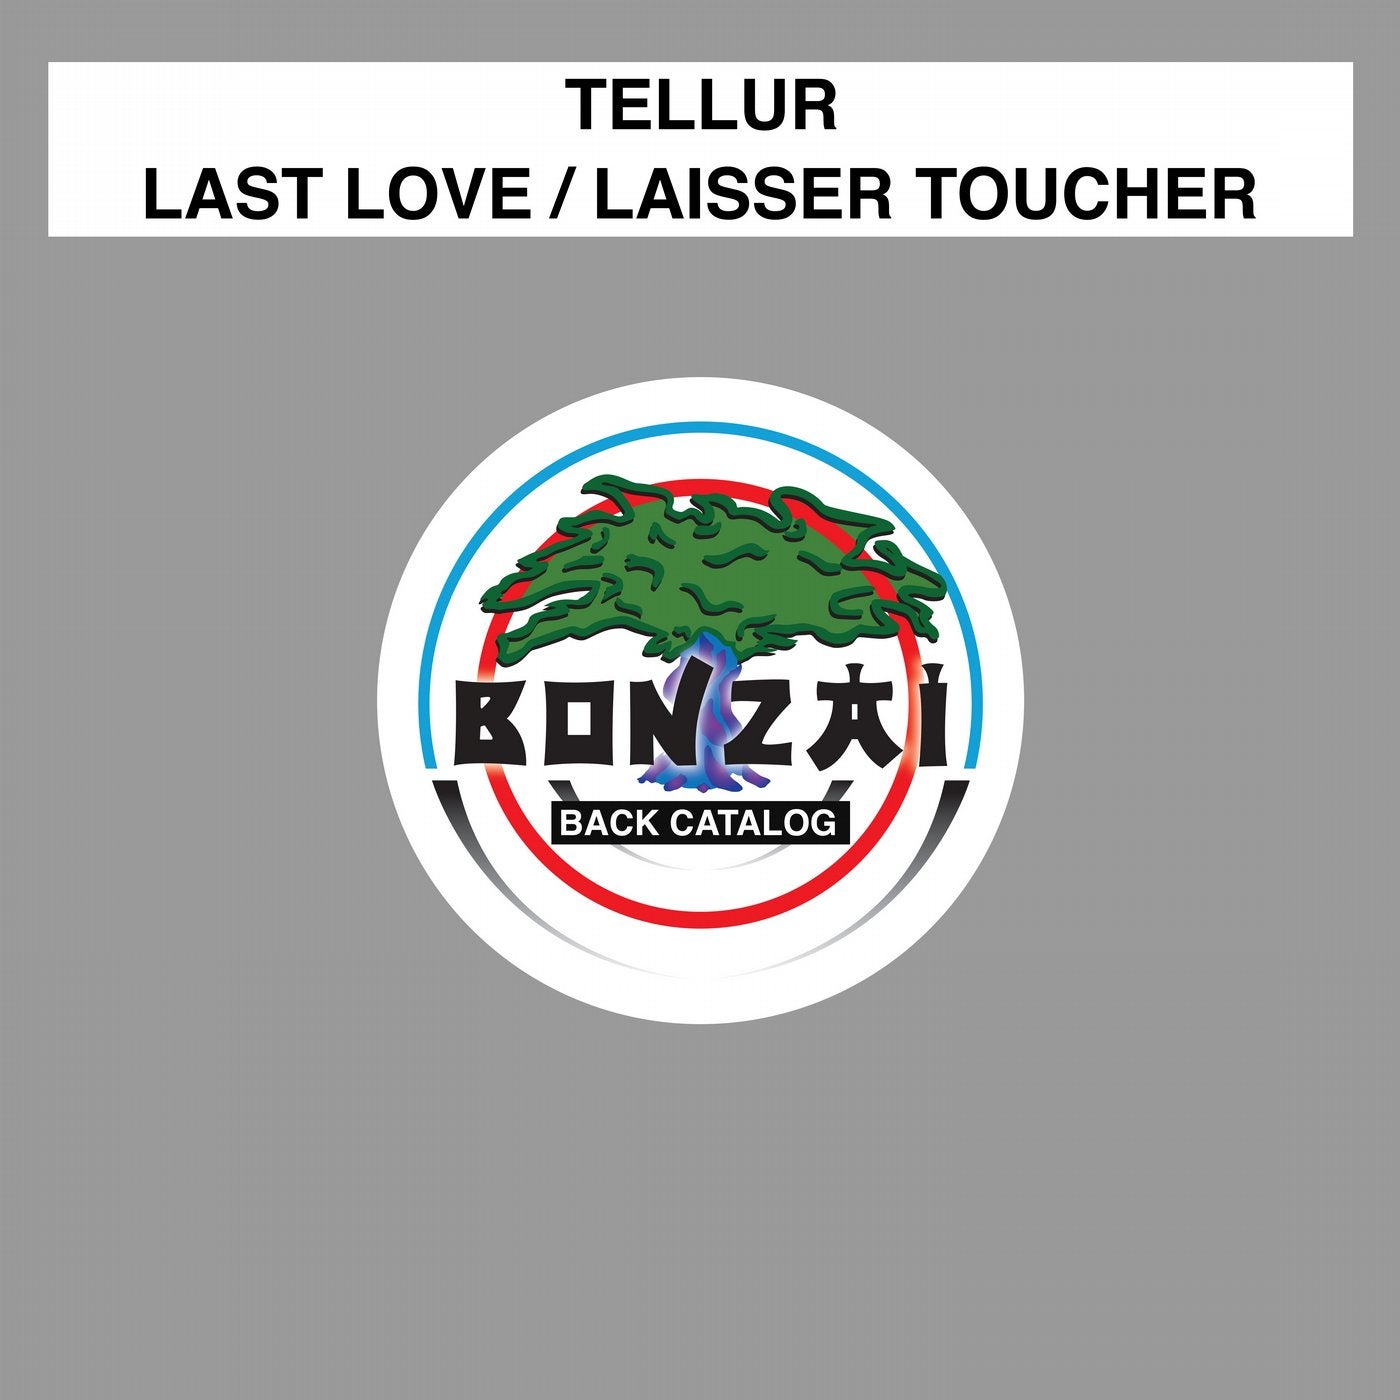 Last Love / Laisser Toucher